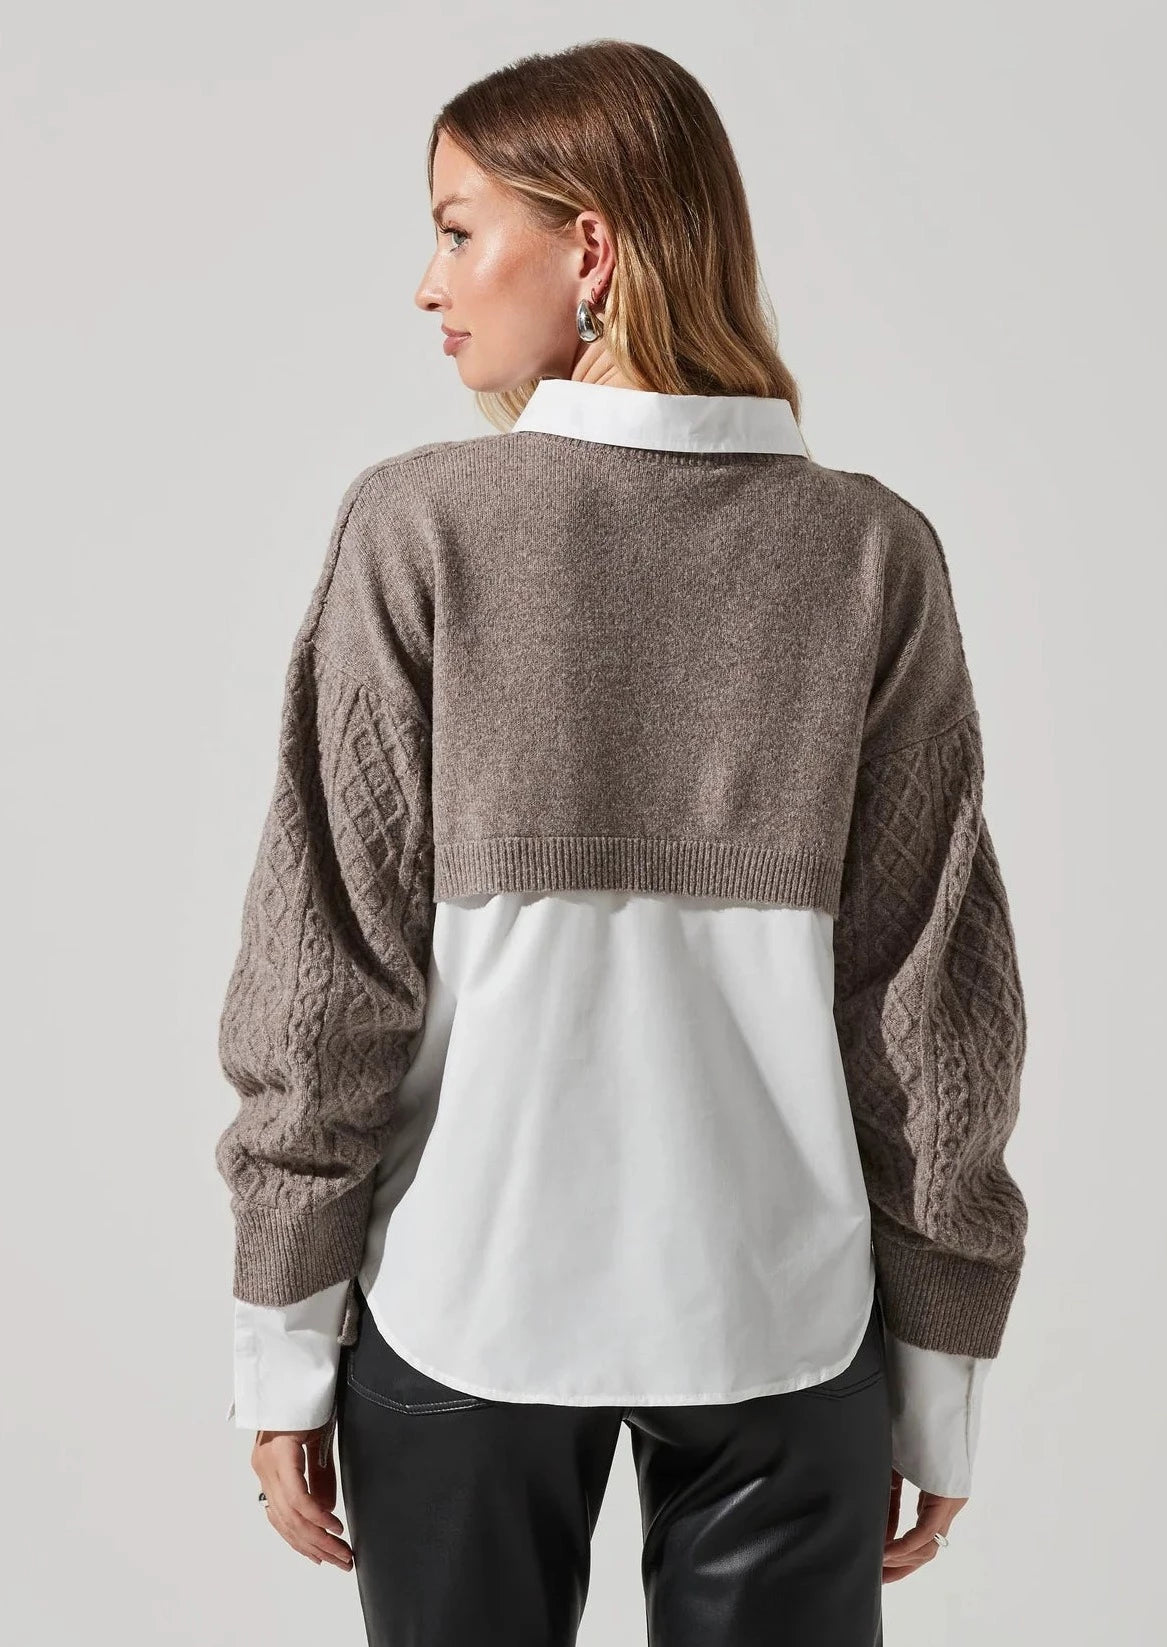 Mixed-Media Sweater